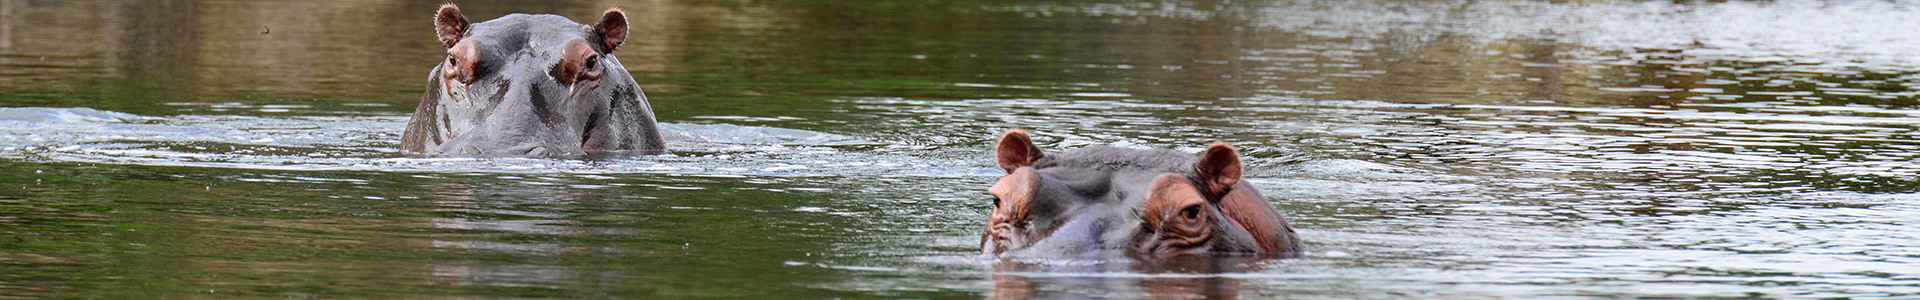 Hippos-small.jpg